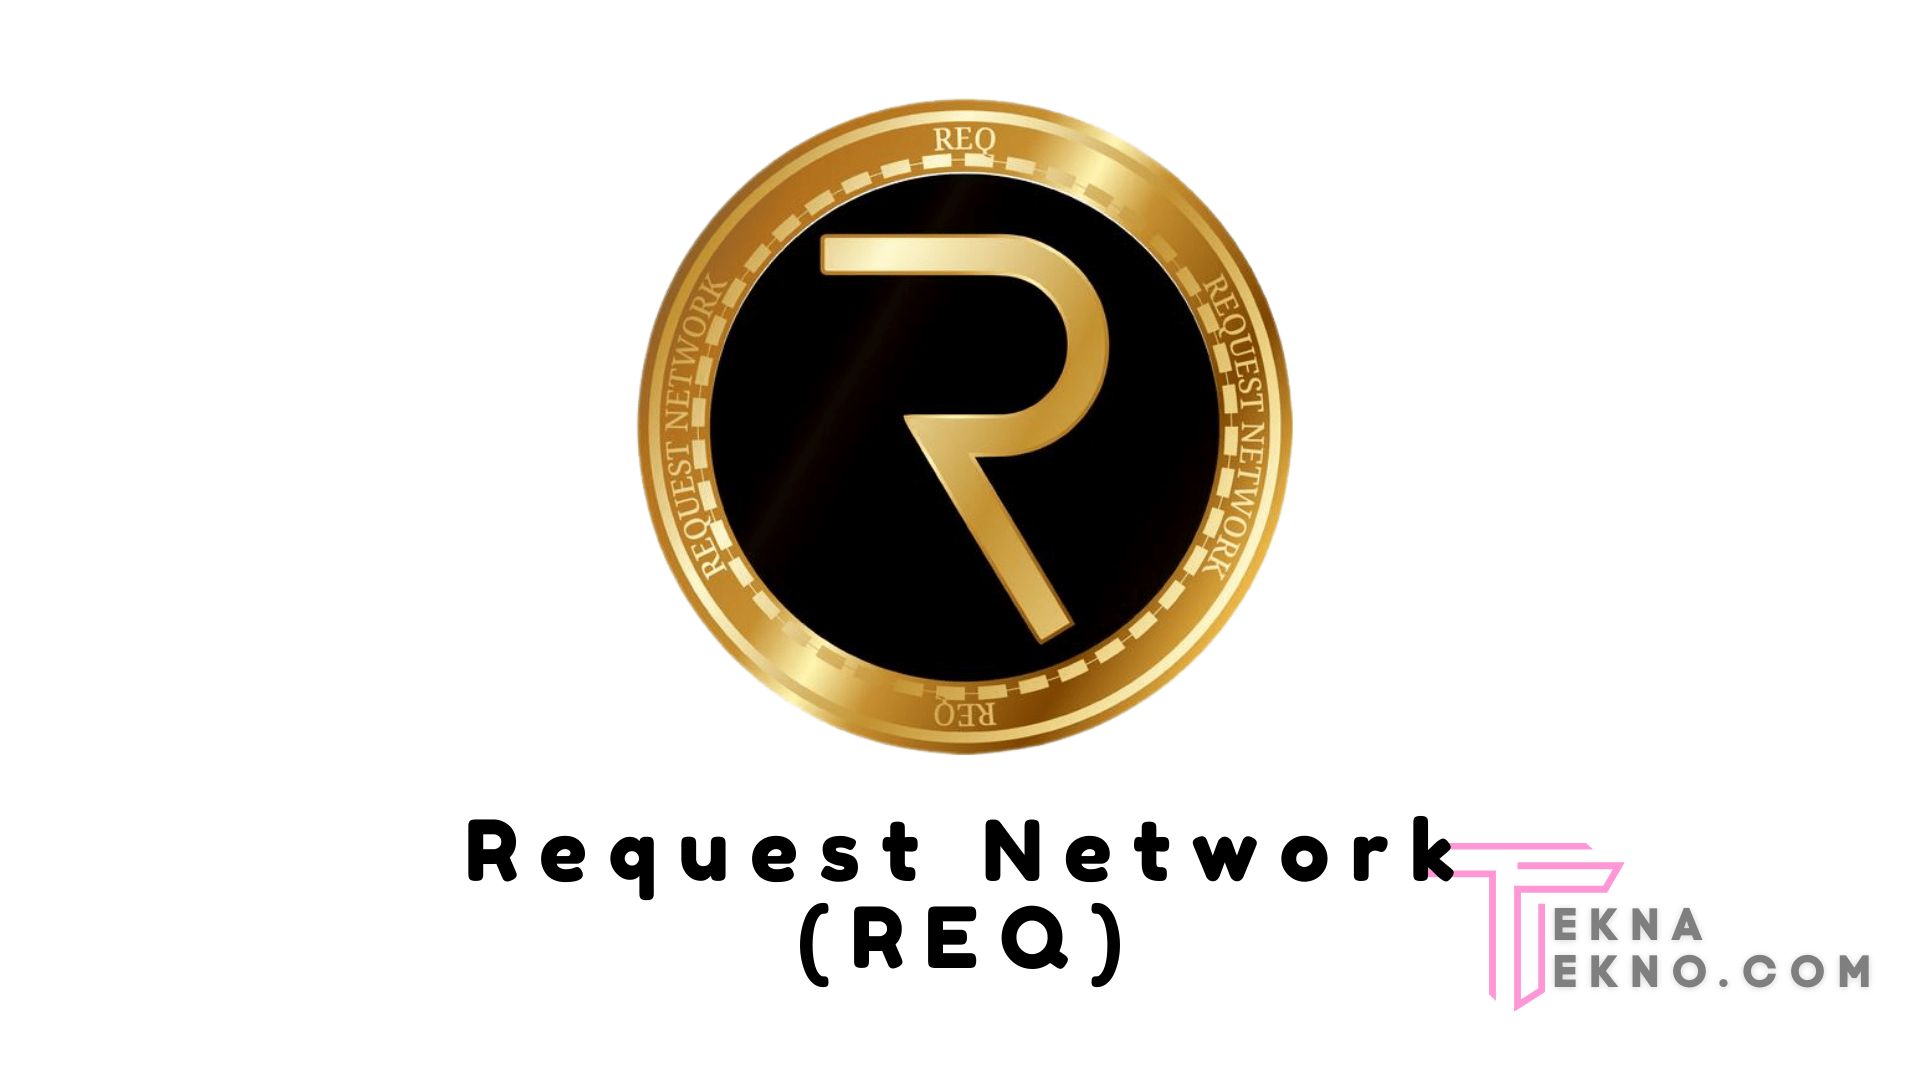 Mengenal Request Network (REQ)